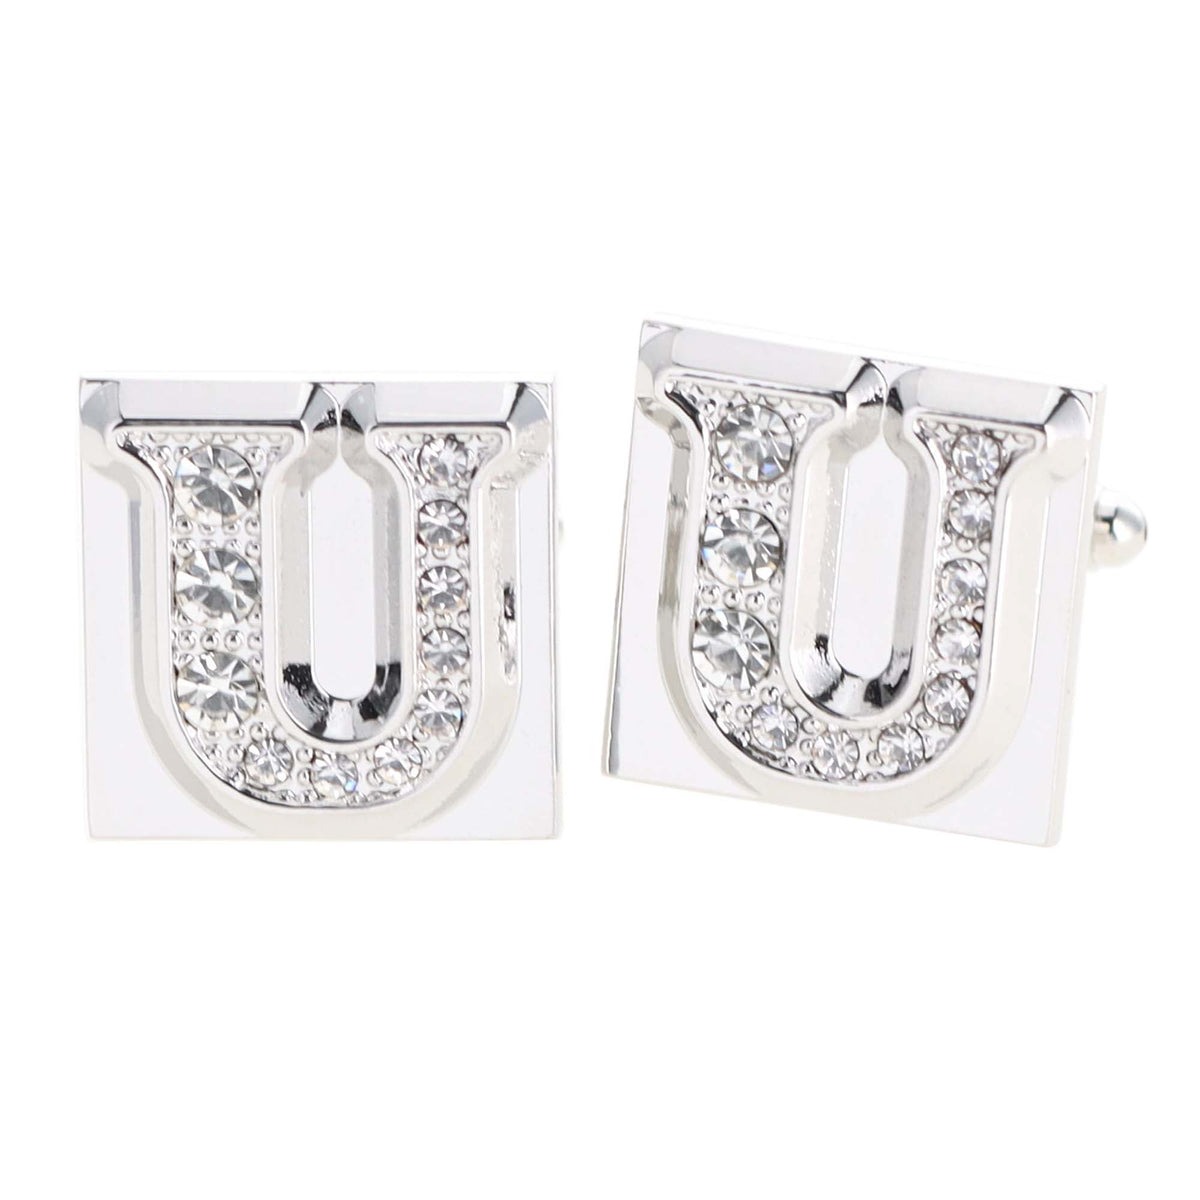 Louis Vuitton Monogram Bold Cufflinks, Silver, One Size